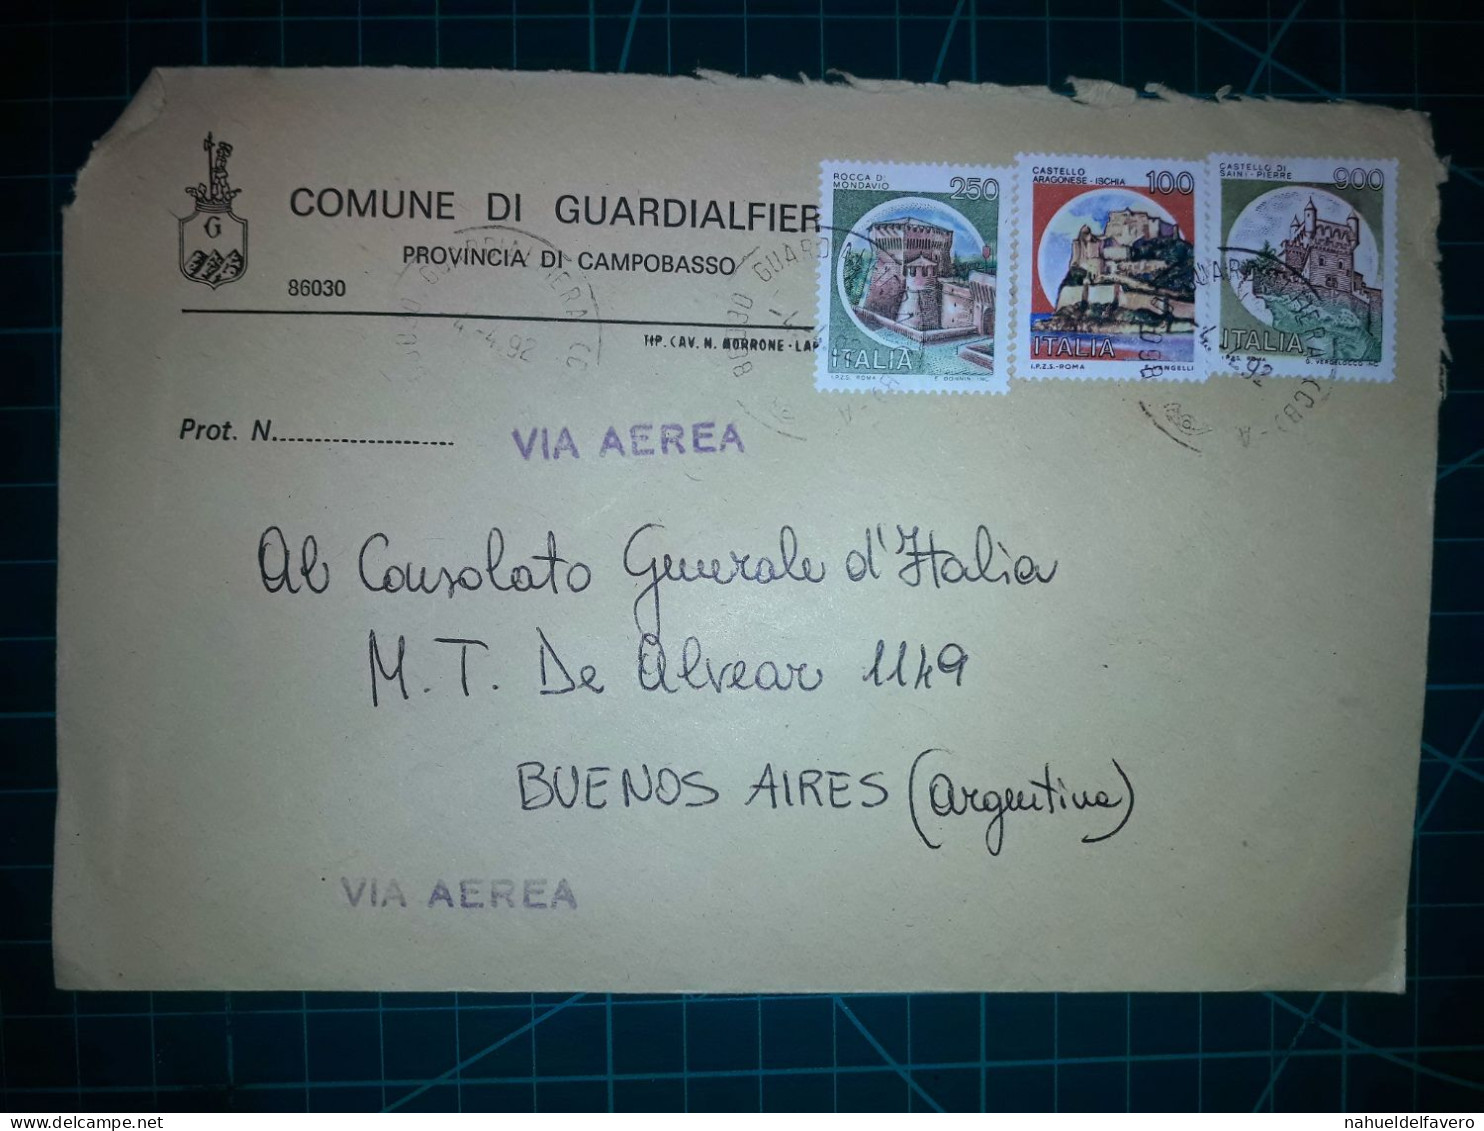 ITALIE, Enveloppe Communale Circulée à Buenos Aires, Argentine Avec Divers Timbres-poste (châteaux Et Autres). Commune: - 1991-00: Gebraucht